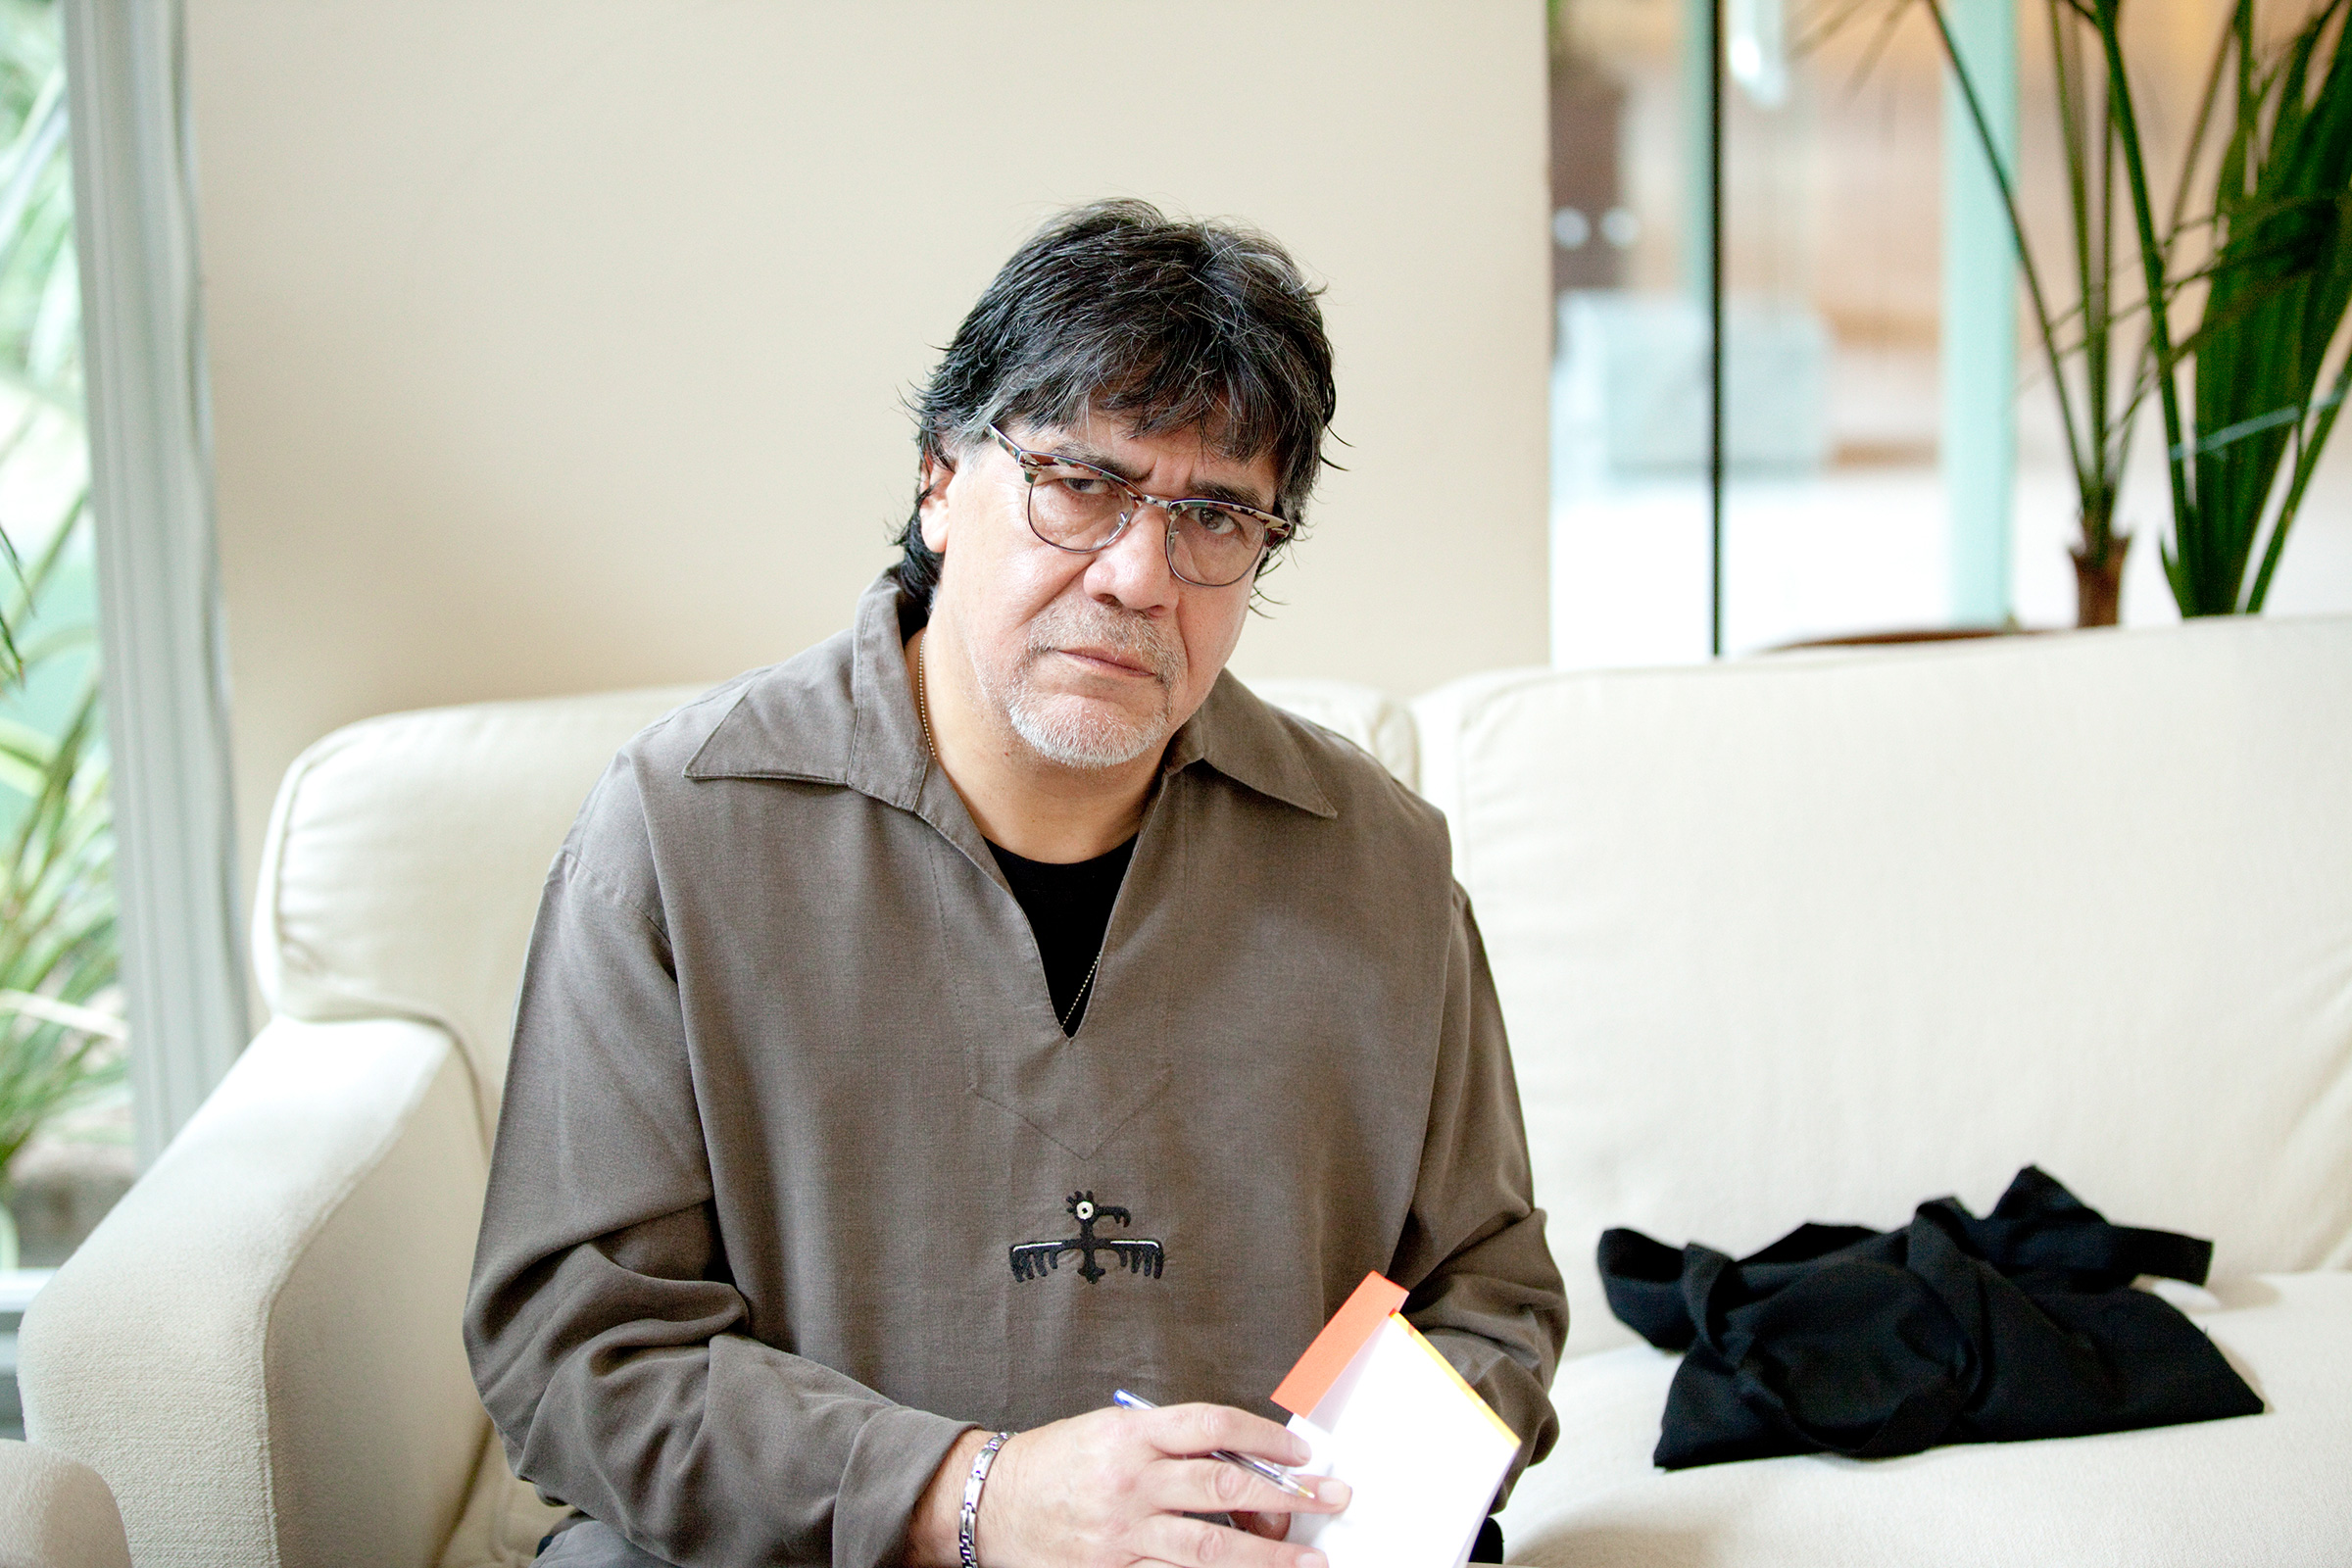 Luis Sepulveda, Cilean writer, Milan, Italy, May 2013.